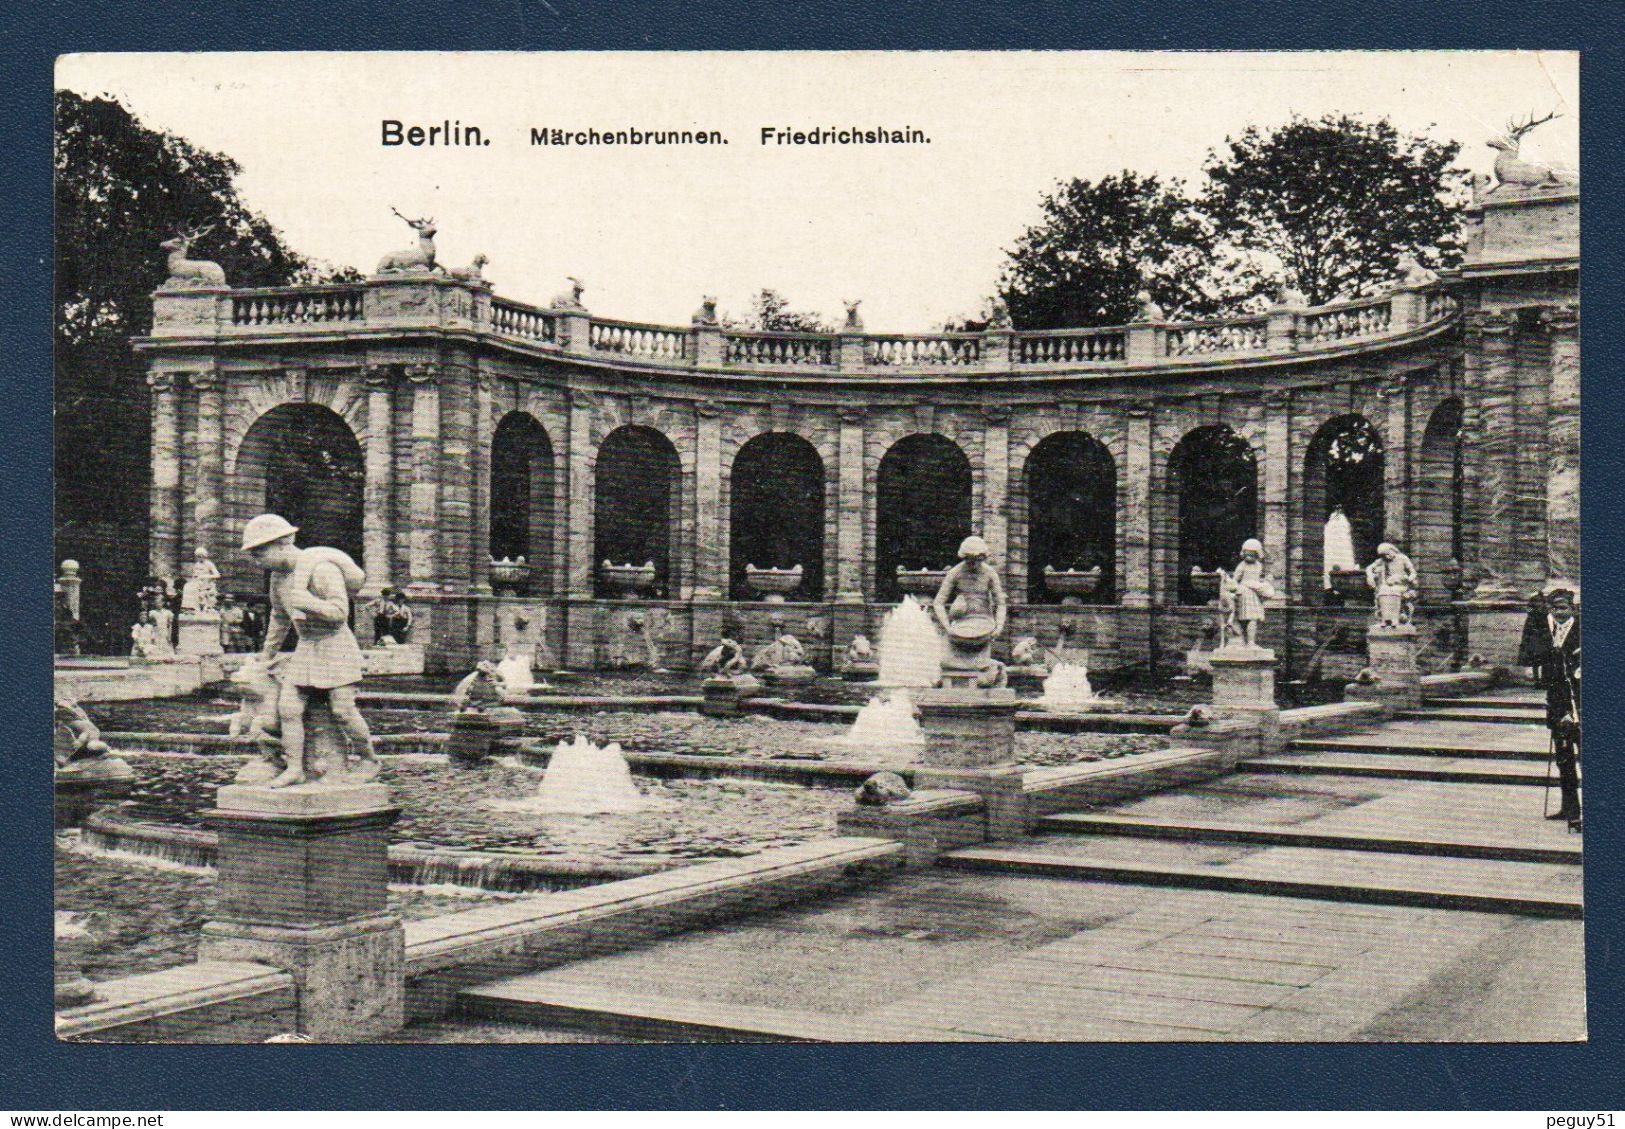 Berlin. Friedrichshain. Märchenbrunnen. Feldpost Zossen -Uebungsplatz. Mai 1917. Censure Diedenhofen - Friedrichshain